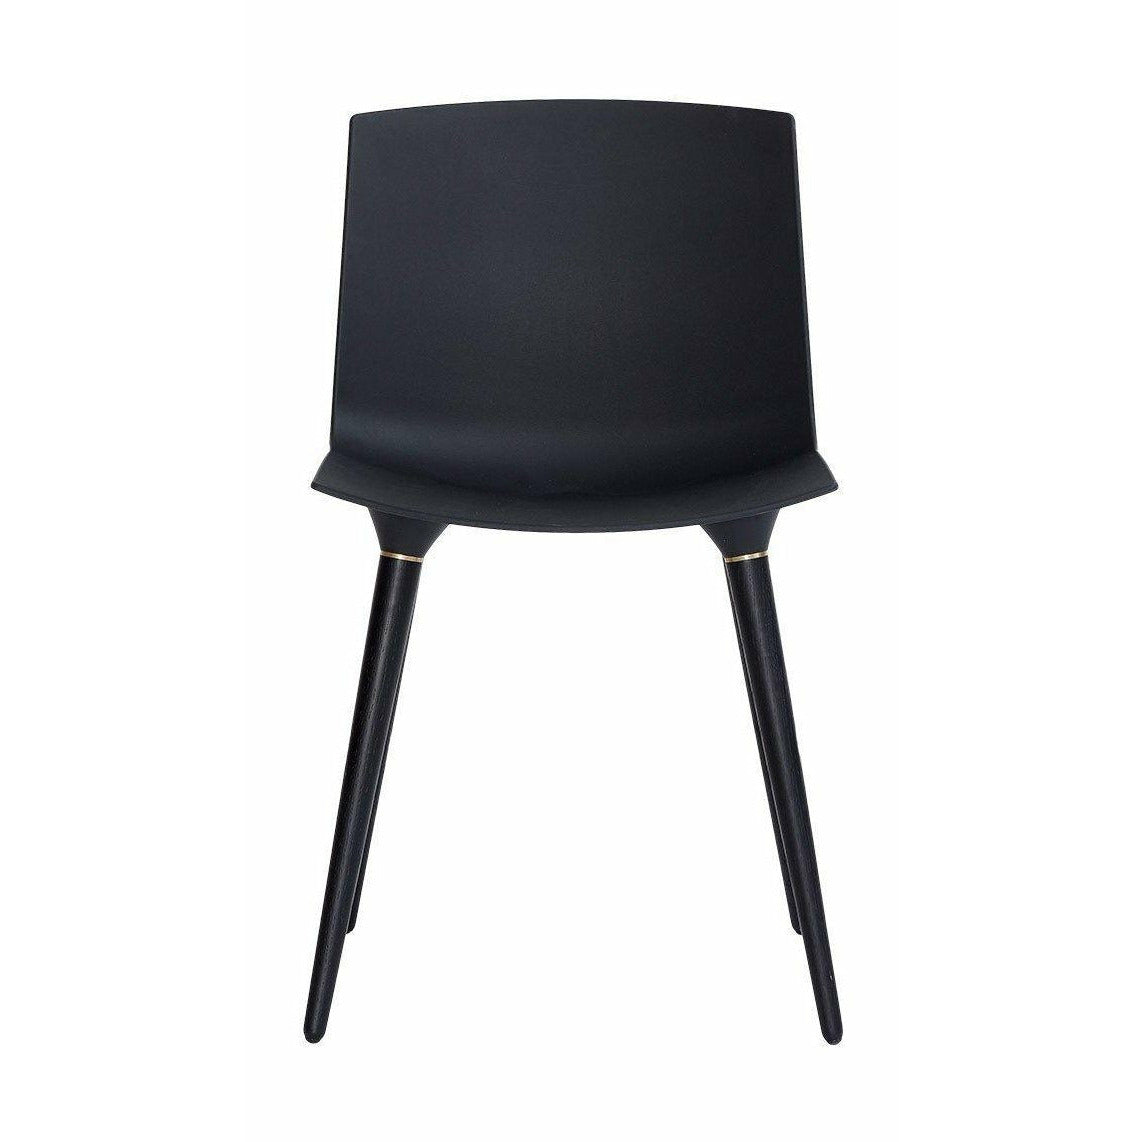 Andersen Möbel TAC Stuhl Black Lack Eiche, schwarzer Plastiksitz